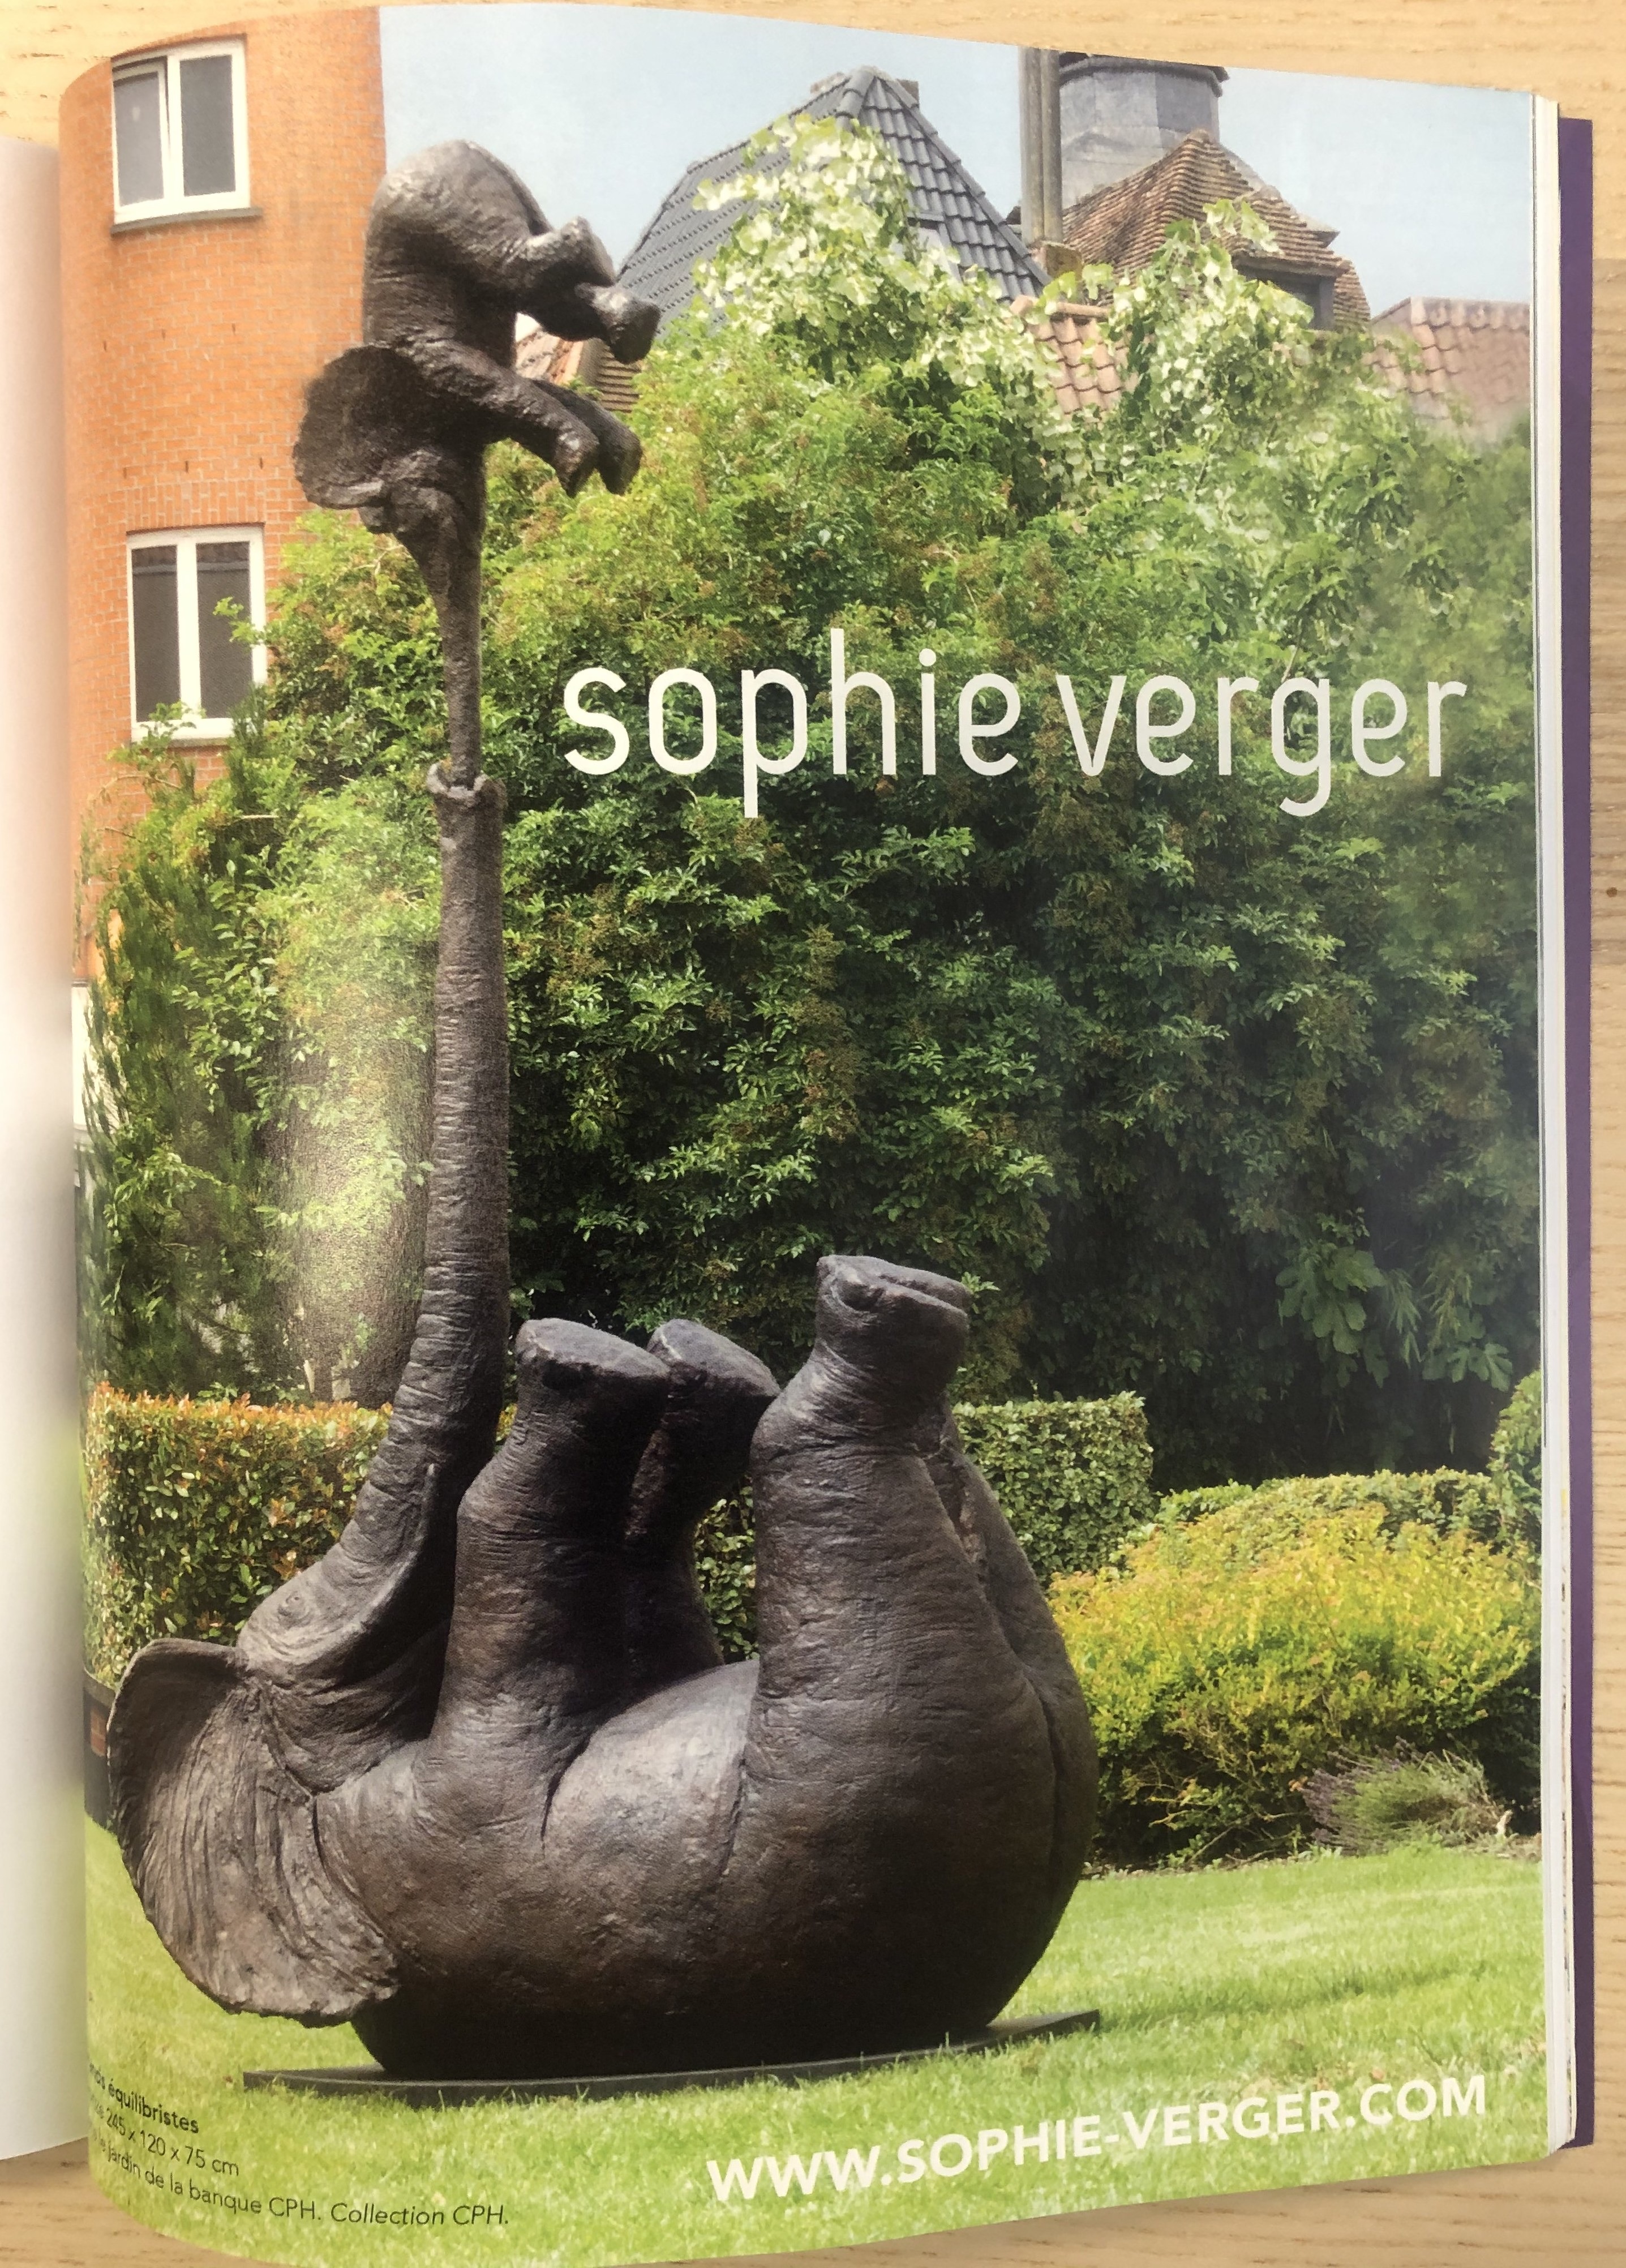 Les sculptures de Sophie Verger dans Artension Magazine numéro 163 